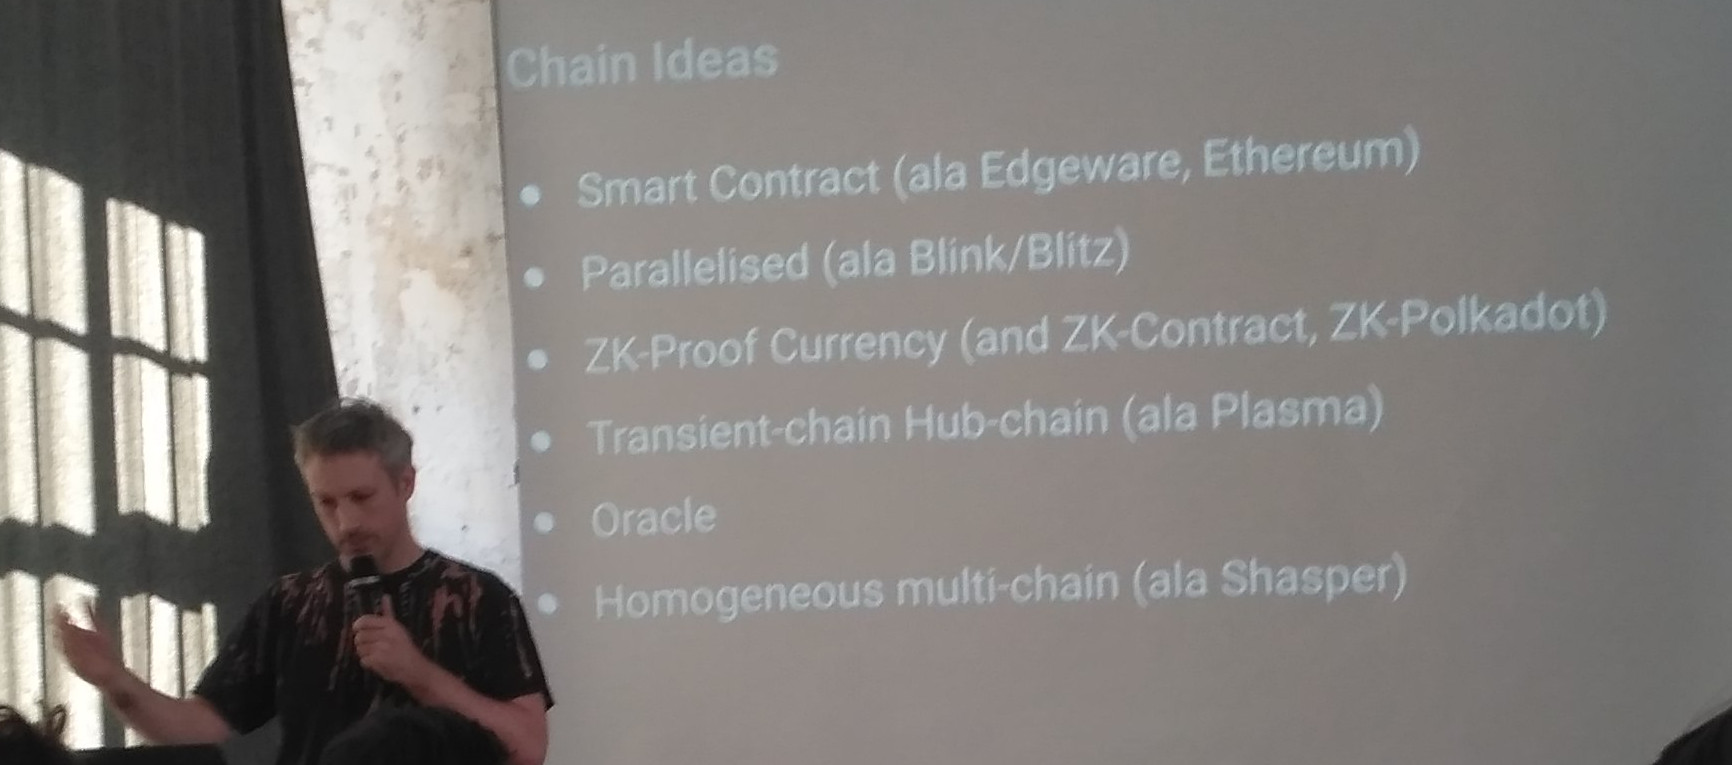 Chain Ideas slide